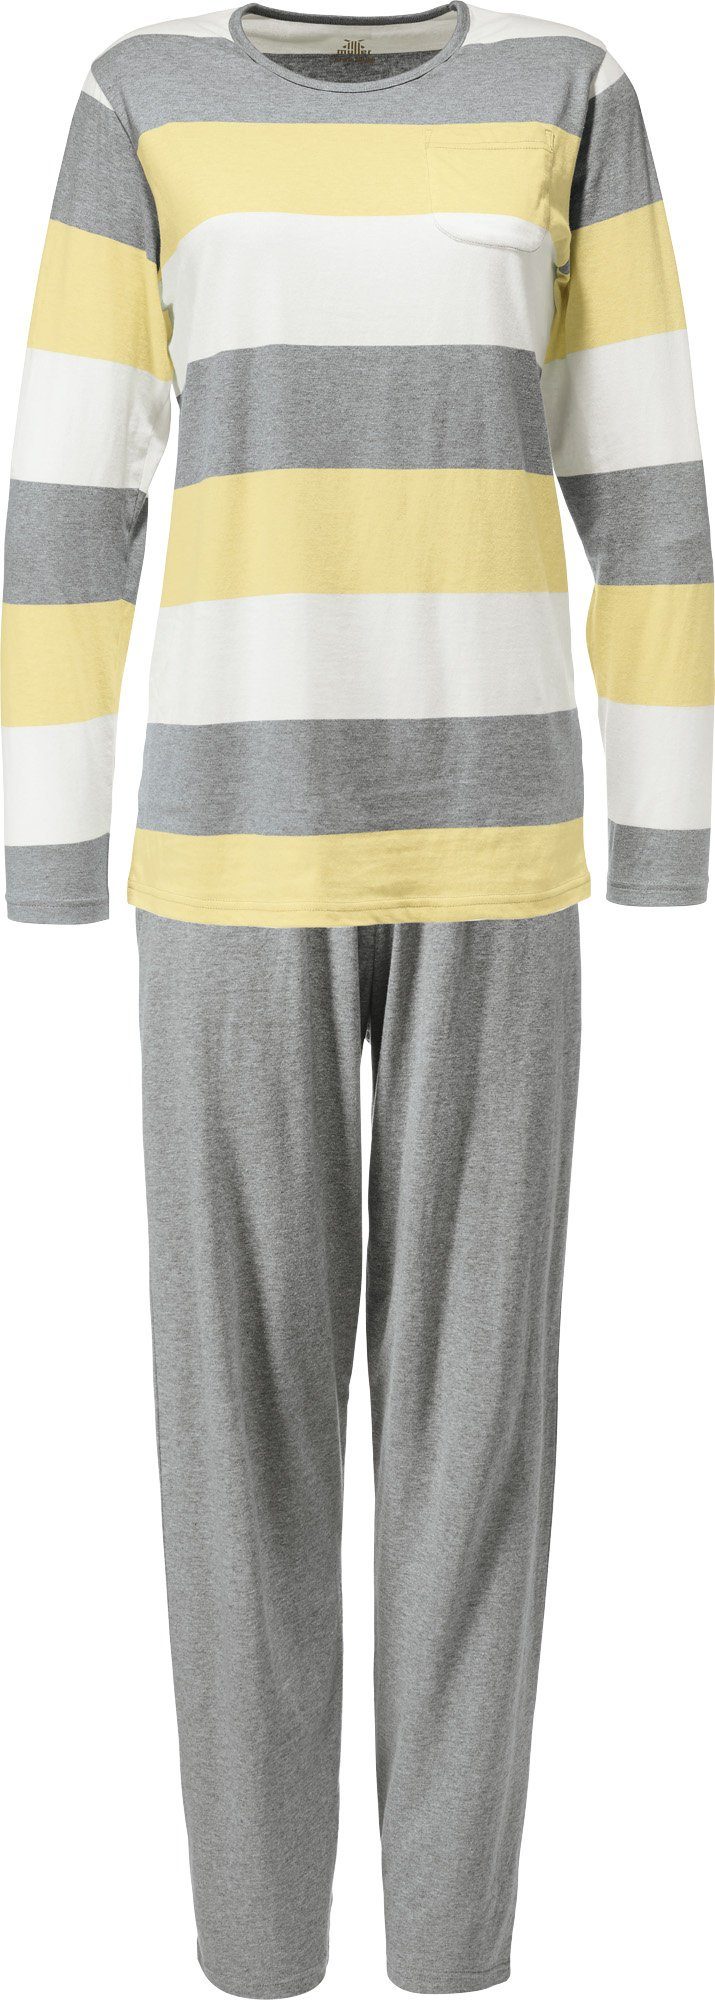 Erwin Müller Pyjama Damen-Schlafanzug Single-Jersey Streifen gelb